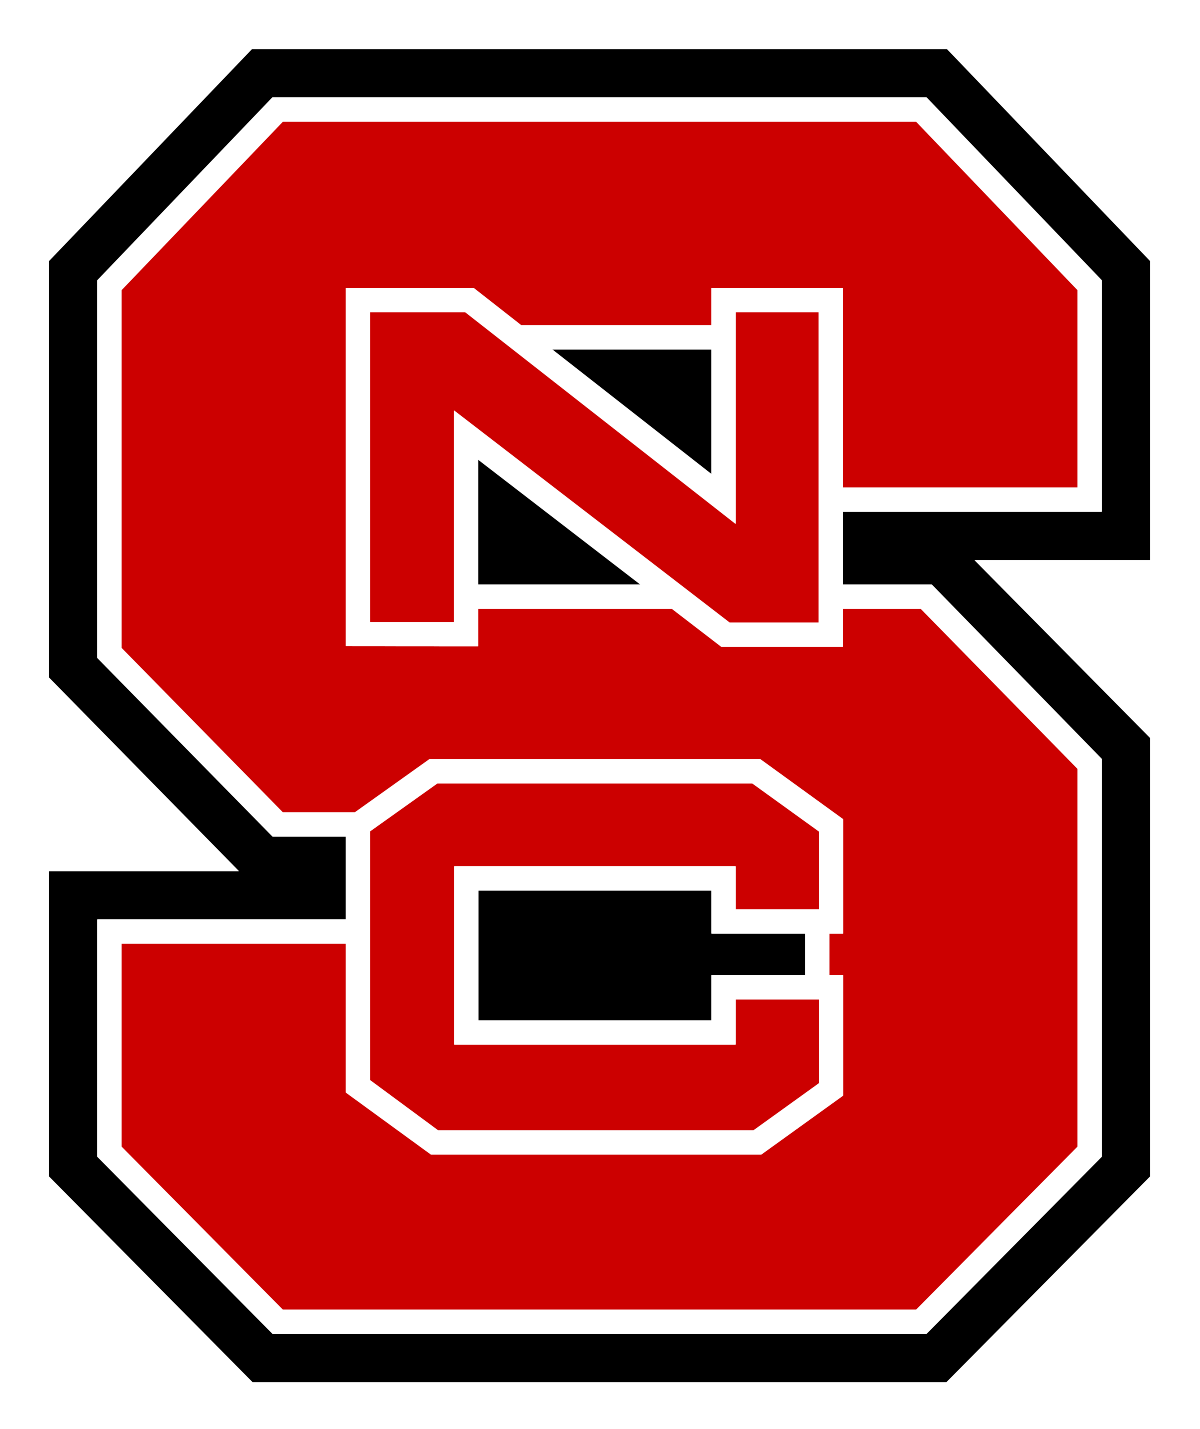 NC State University